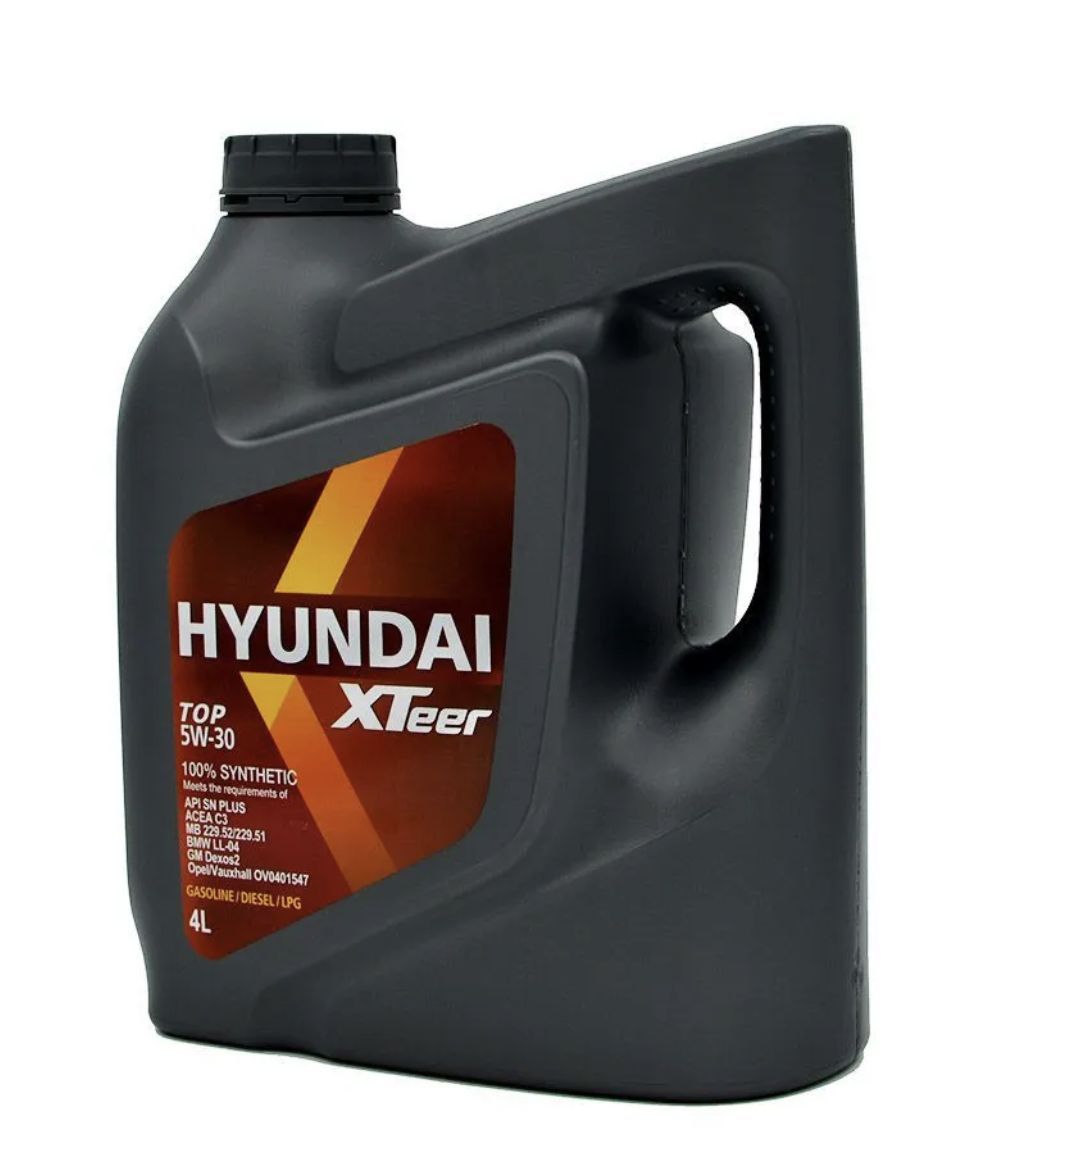 Xteer hyundai 5w30 sp. 1061223 Hyundai XTEER. Hyundai XTEER 1011411. Hyundai XTEER 1051222. Hyundai XTEER масло моторное.